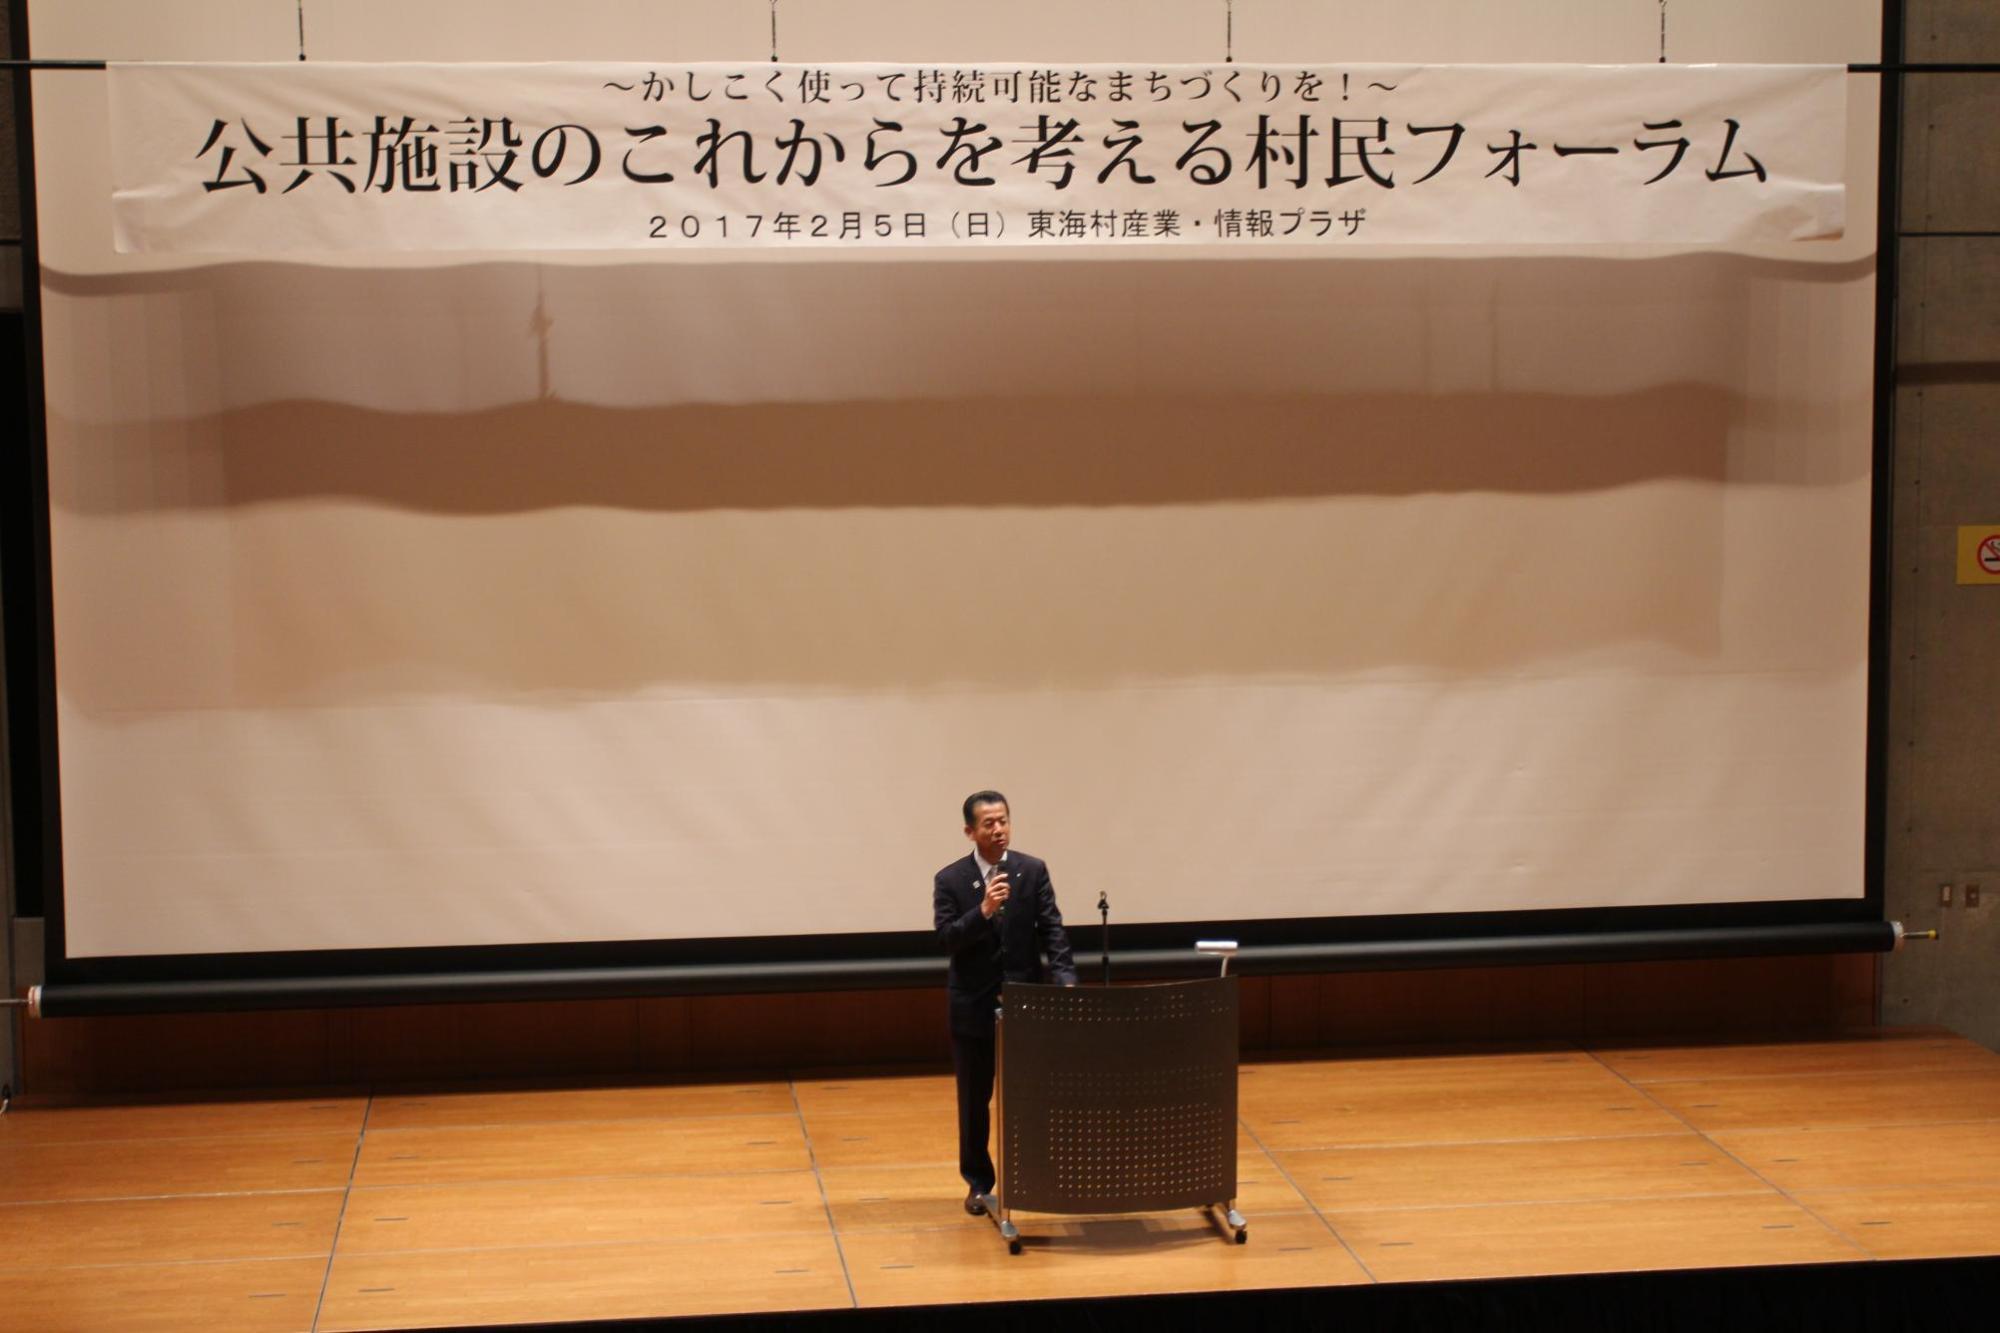 公共施設のこれからを考える村民フォーラム講演会で東海村の 山田 修村長がお話されている写真